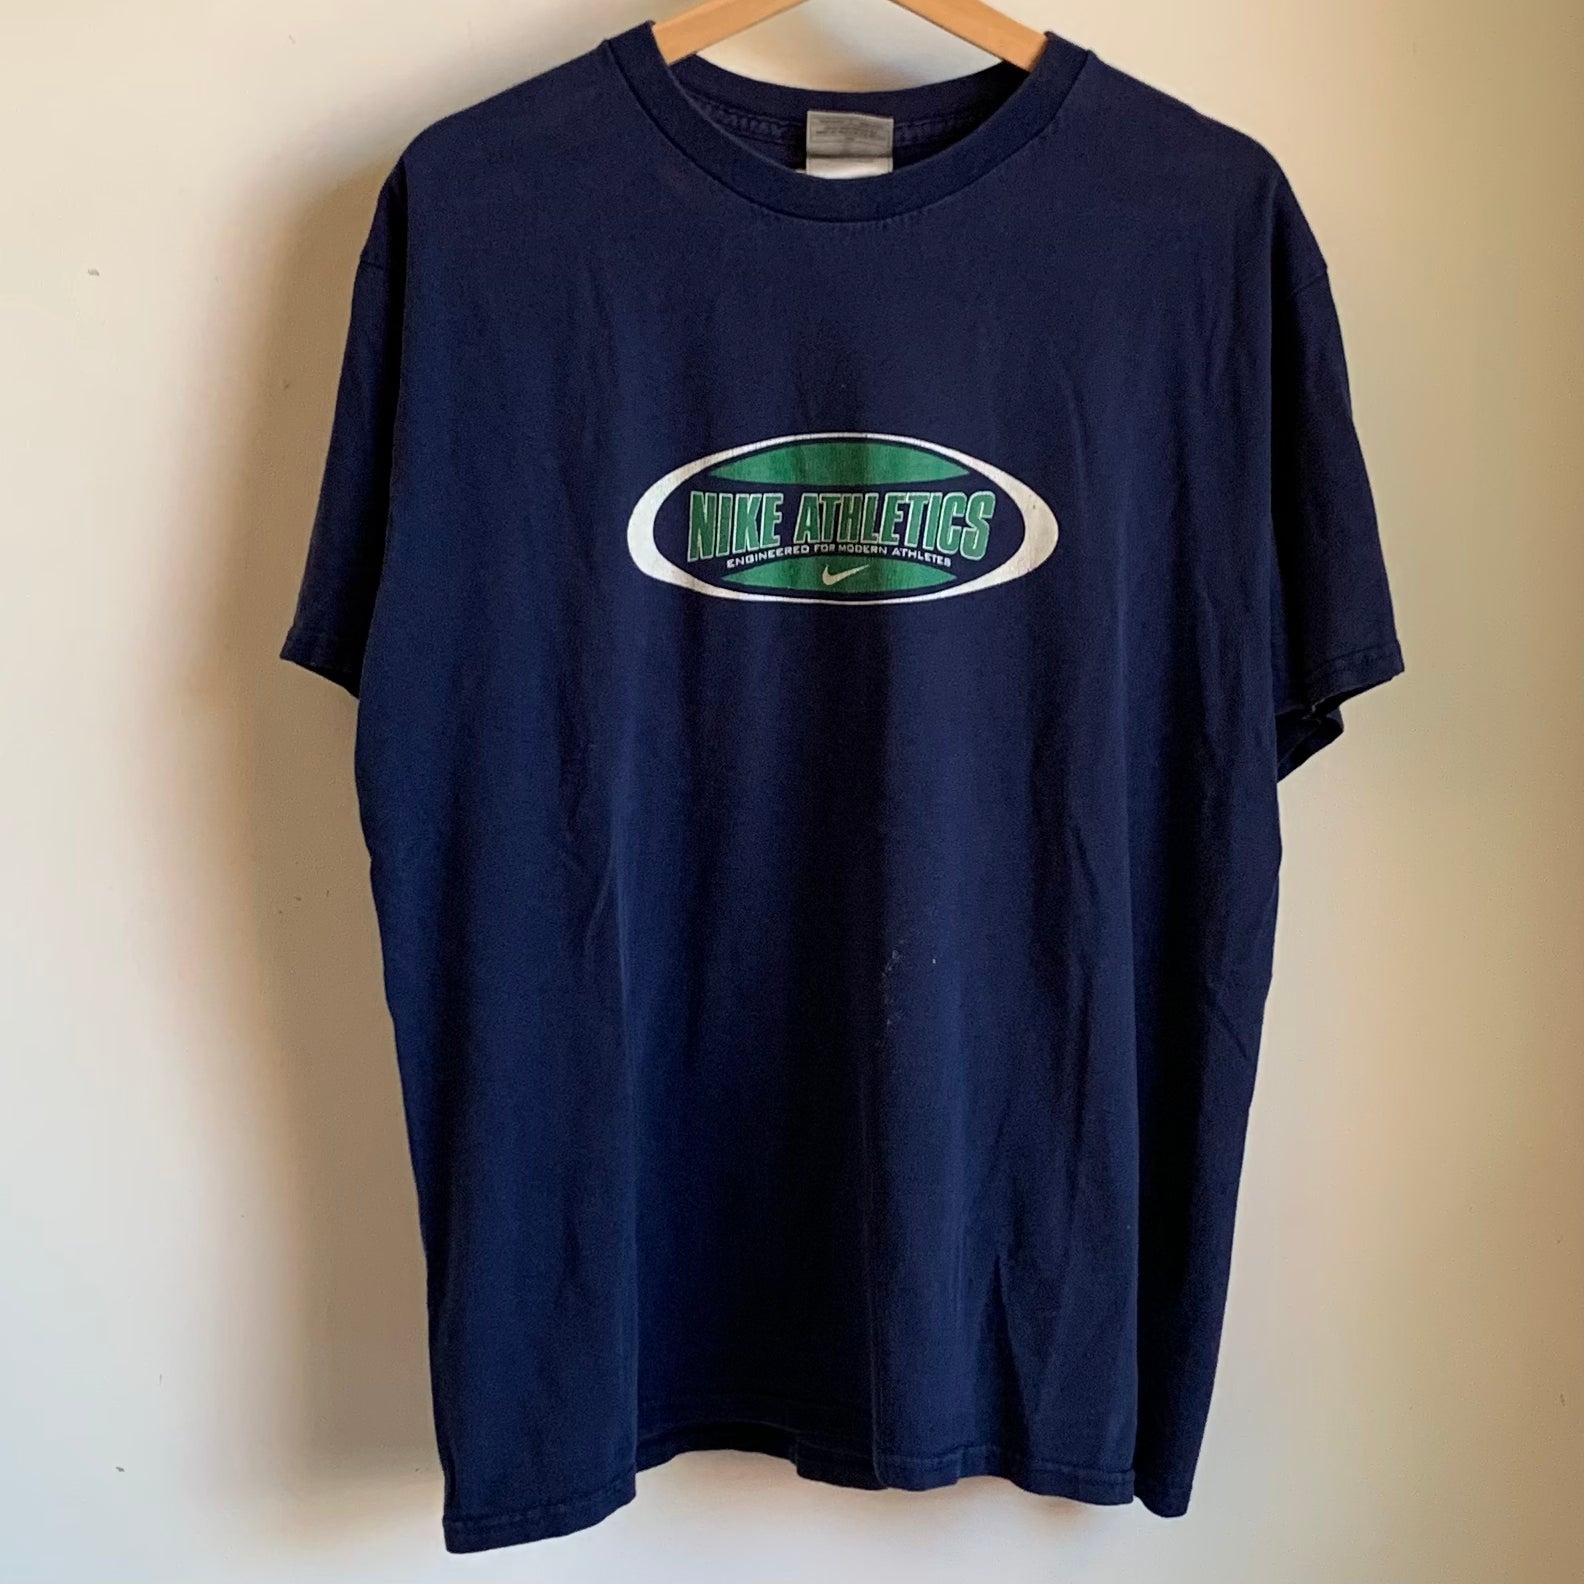 Vintage Nike Athletics Shirt M – Laundry